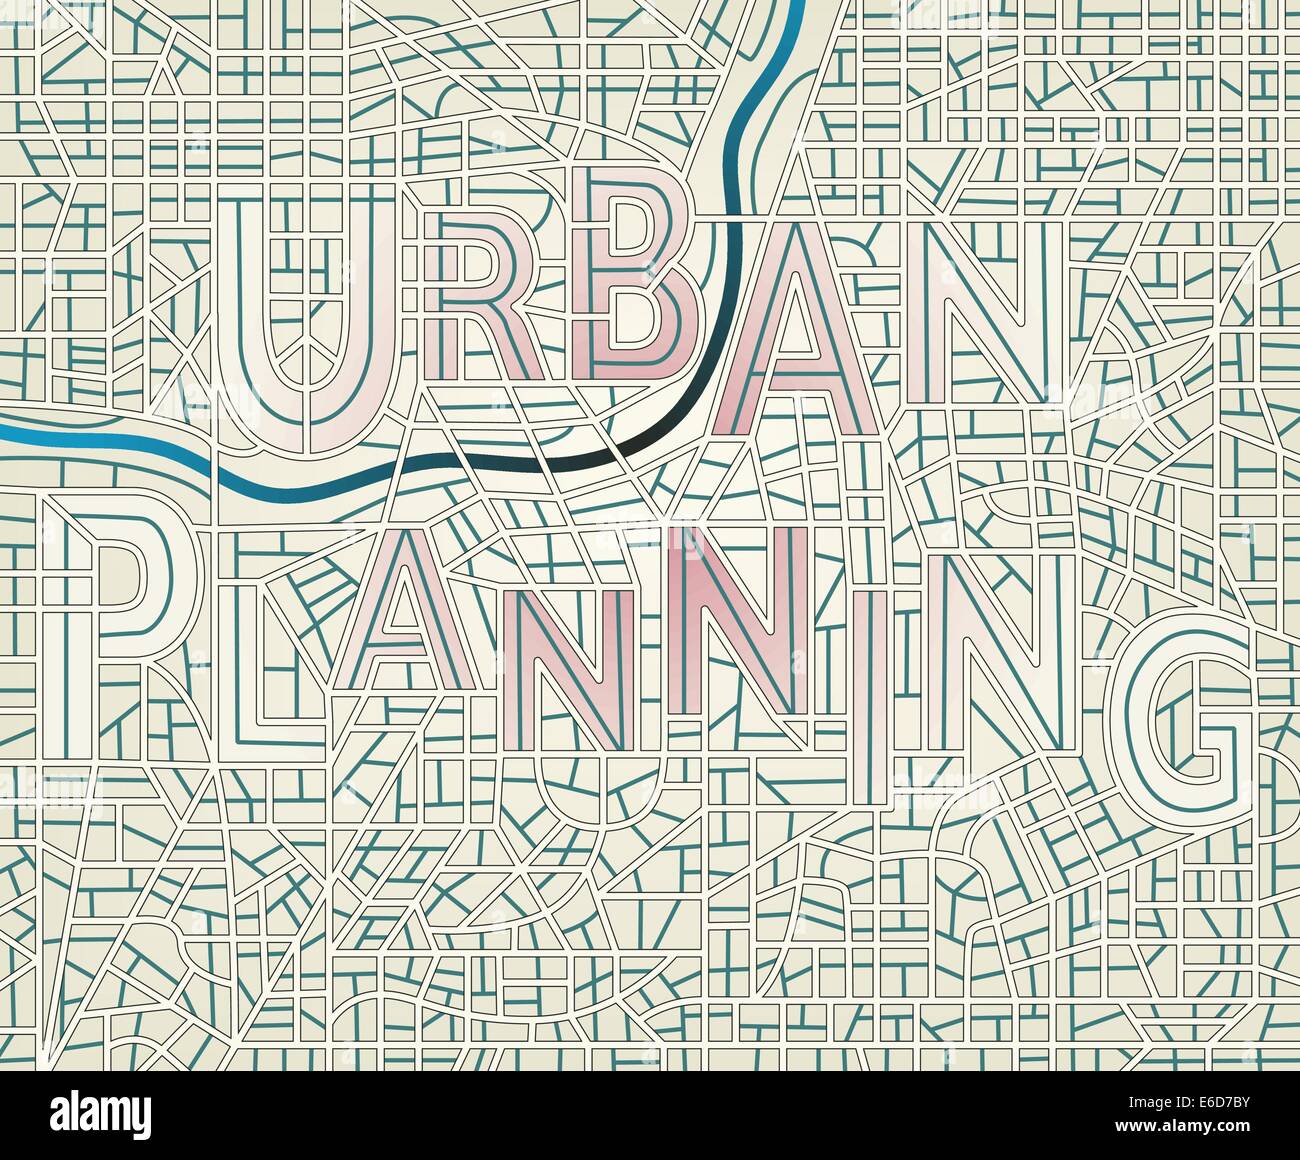 Bearbeitbare Vektorkarte einer generischen Stadt mit Straßen, die Rechtschreibung der Wörter "Stadtplanung" Stock Vektor